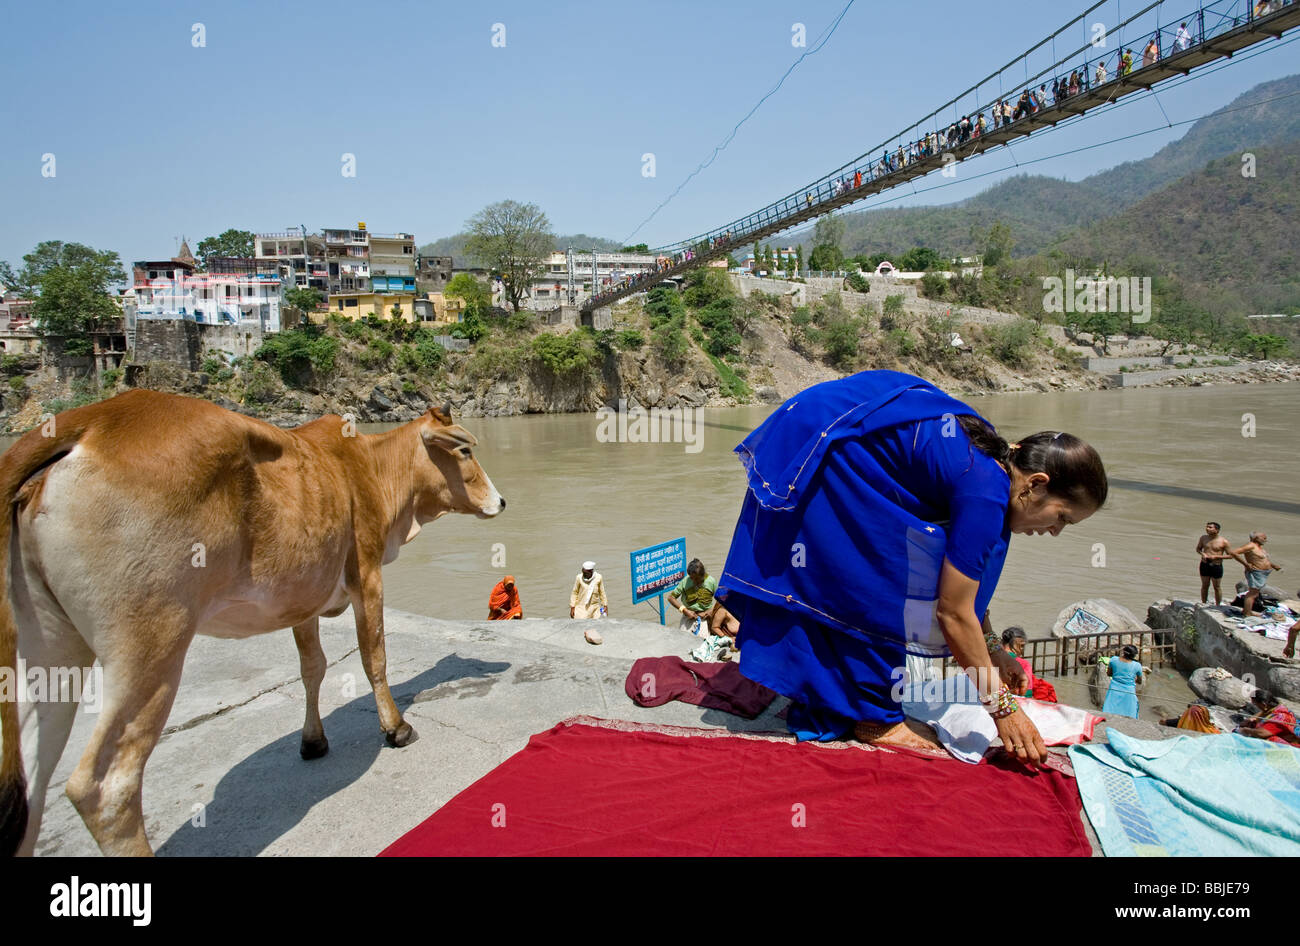 Le séchage. blanchisserie Femme Gange. Lakshman Jhula. Rishikesh. Uttarakhand. L'Inde Banque D'Images